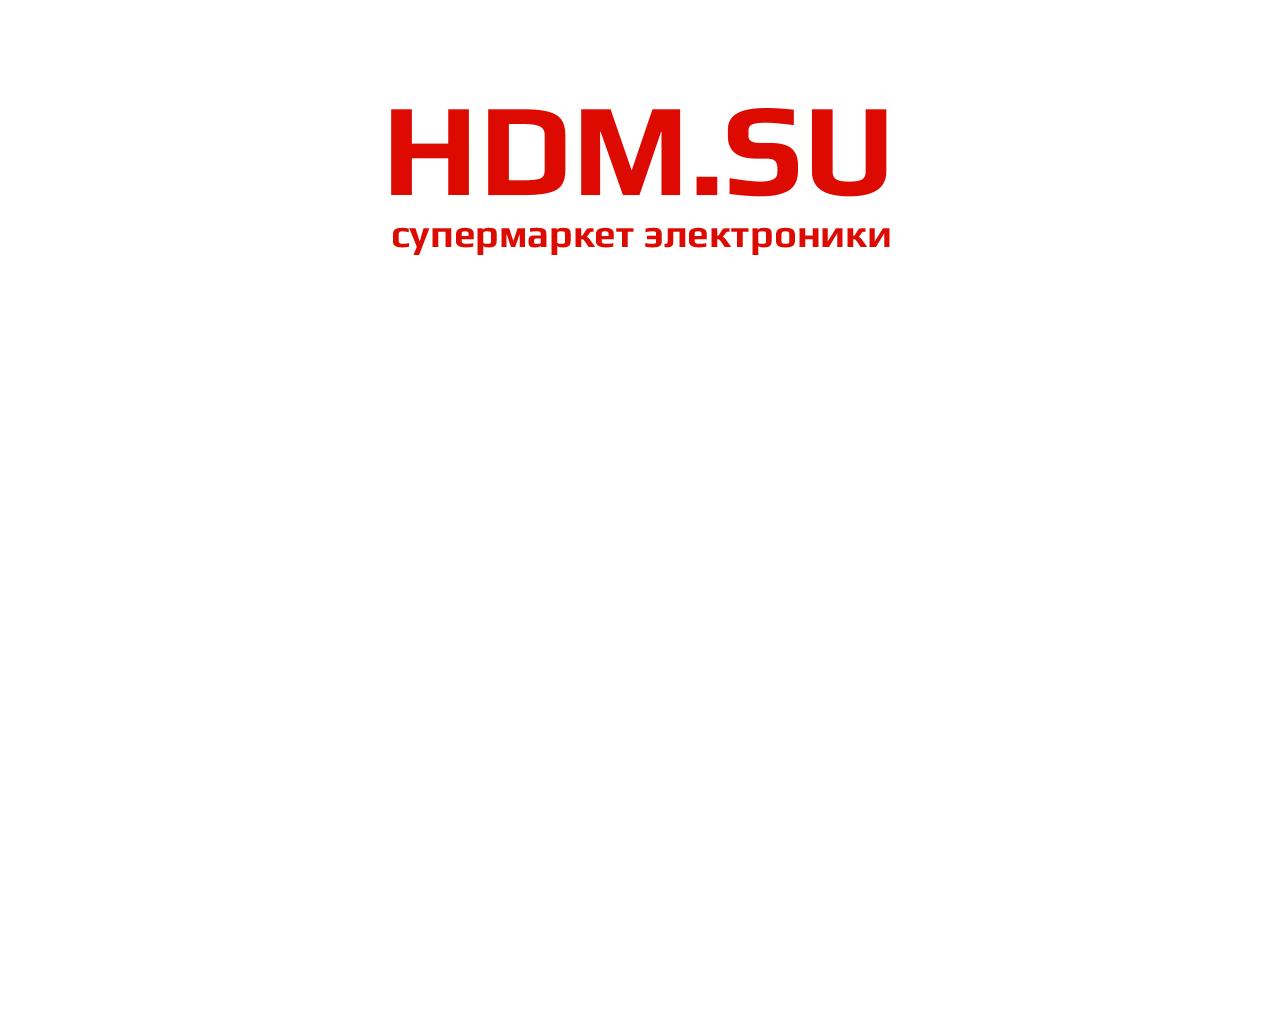 Изображение сайта hdm.su в разрешении 1280x1024